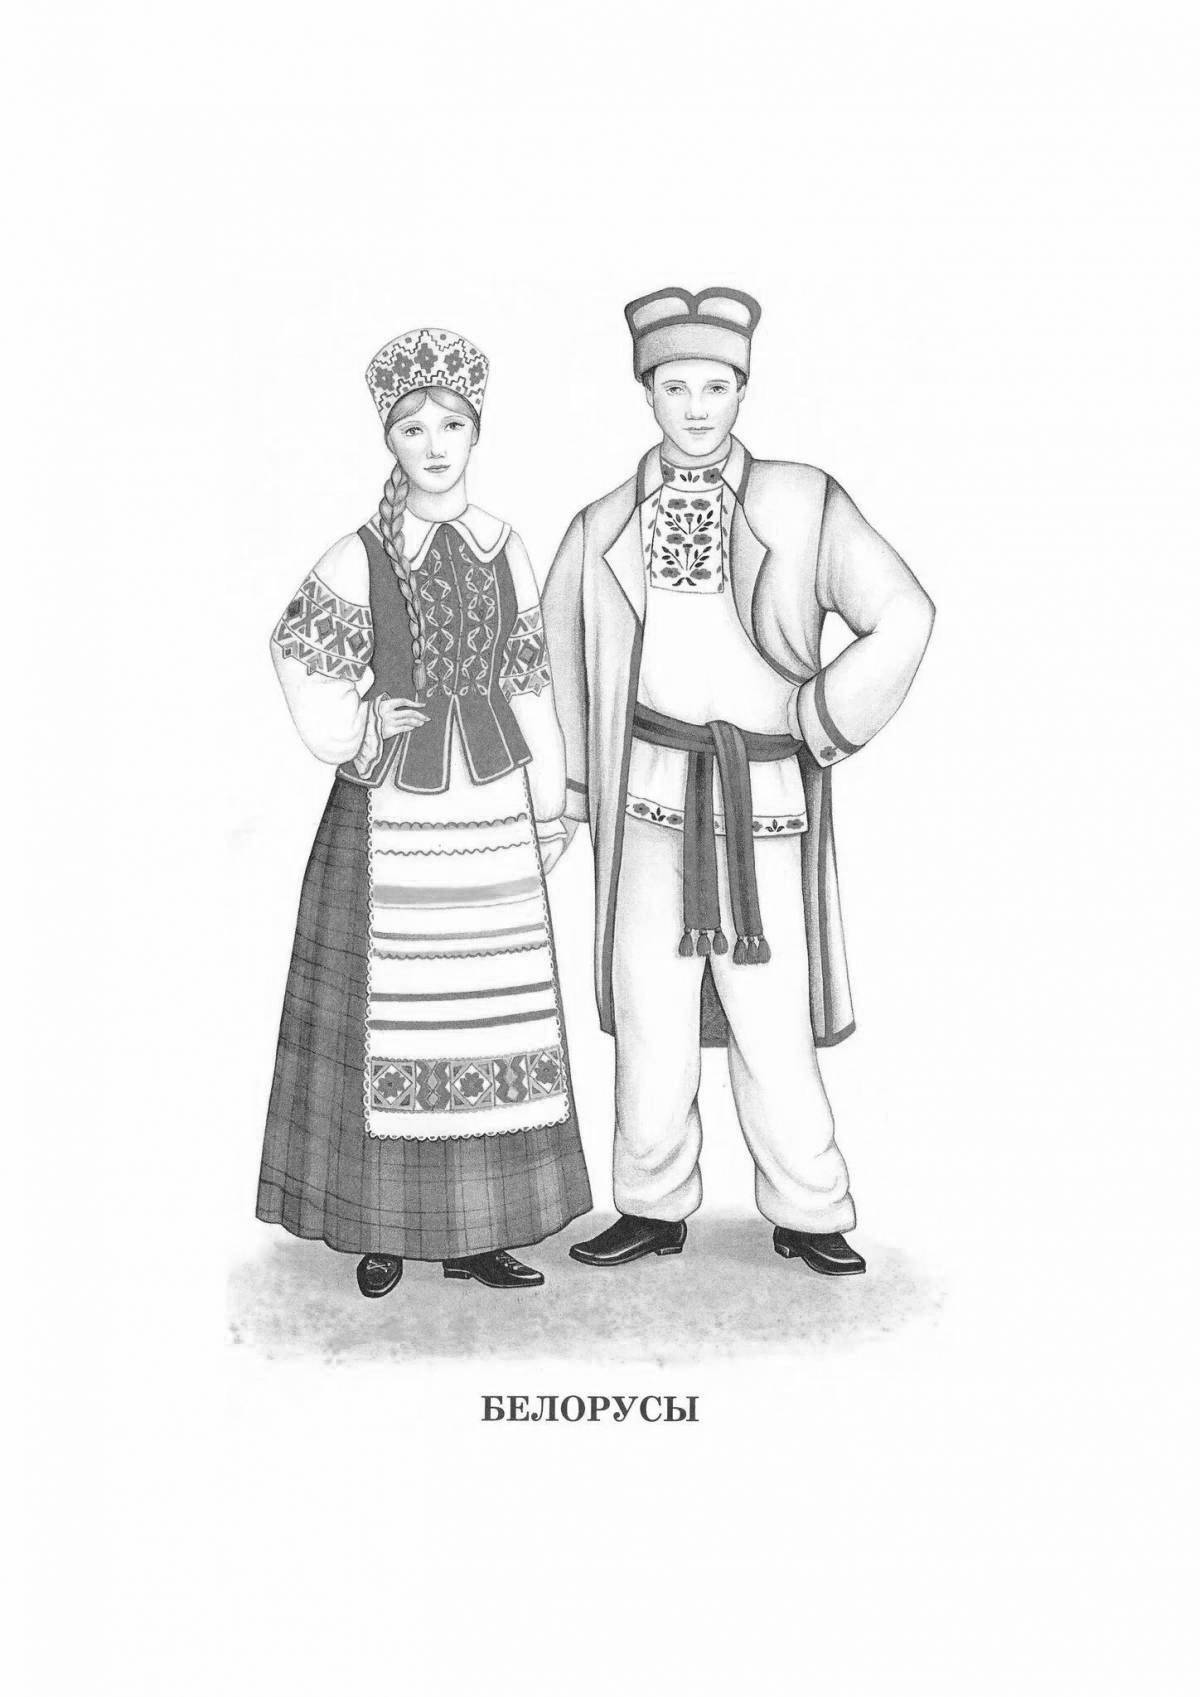 Обаятельный белорусский национальный костюм для детей